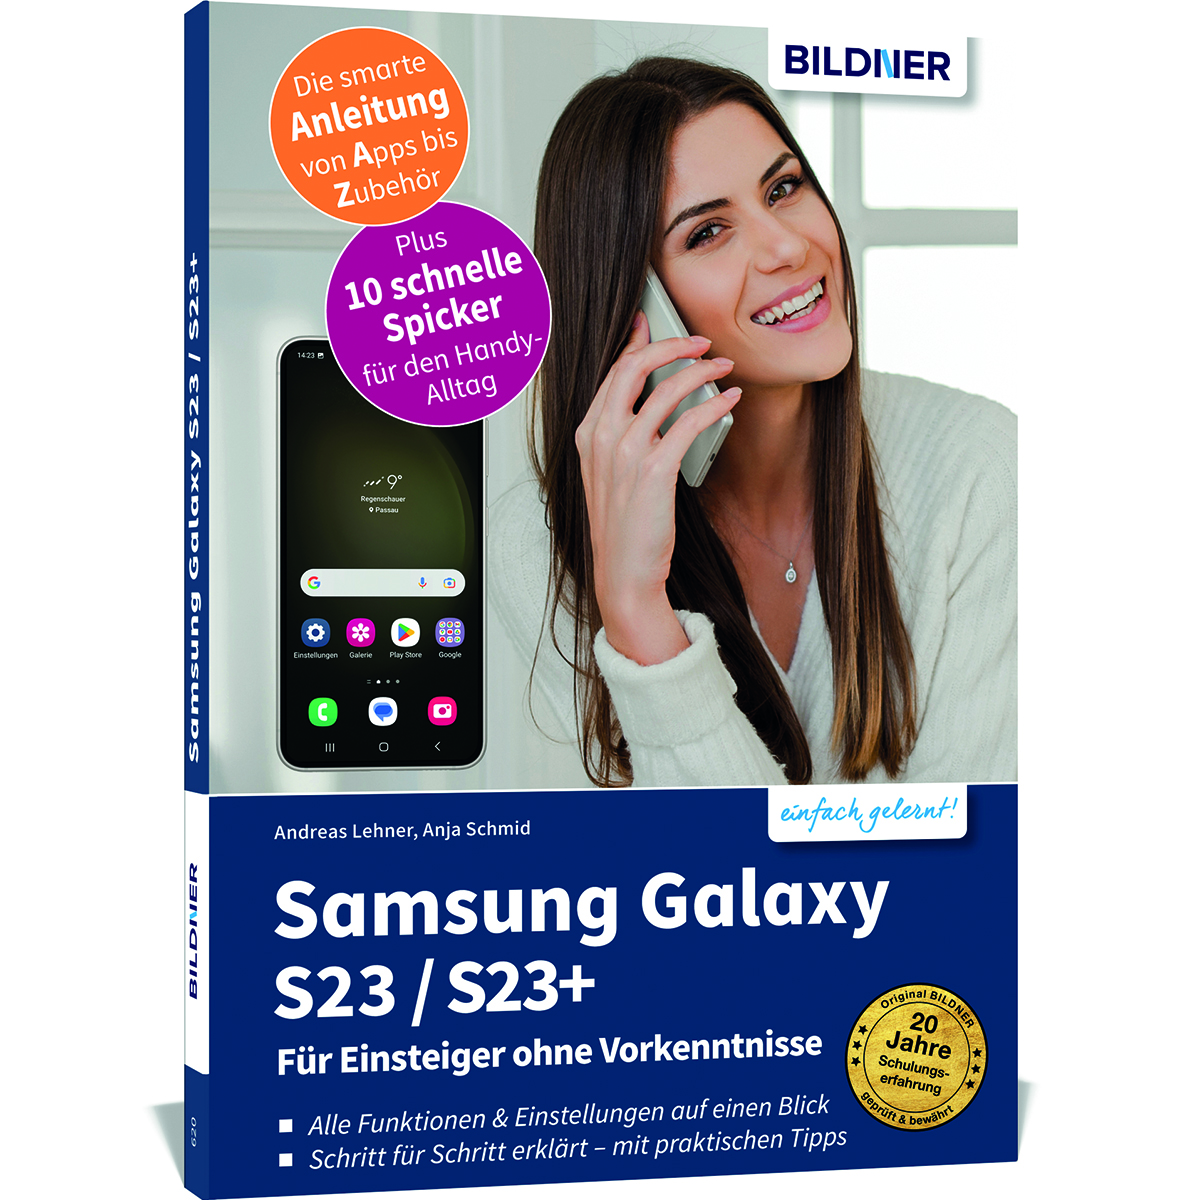 – Samsung Für Einsteiger Vorkenntnisse Galaxy S23/S23+ ohne